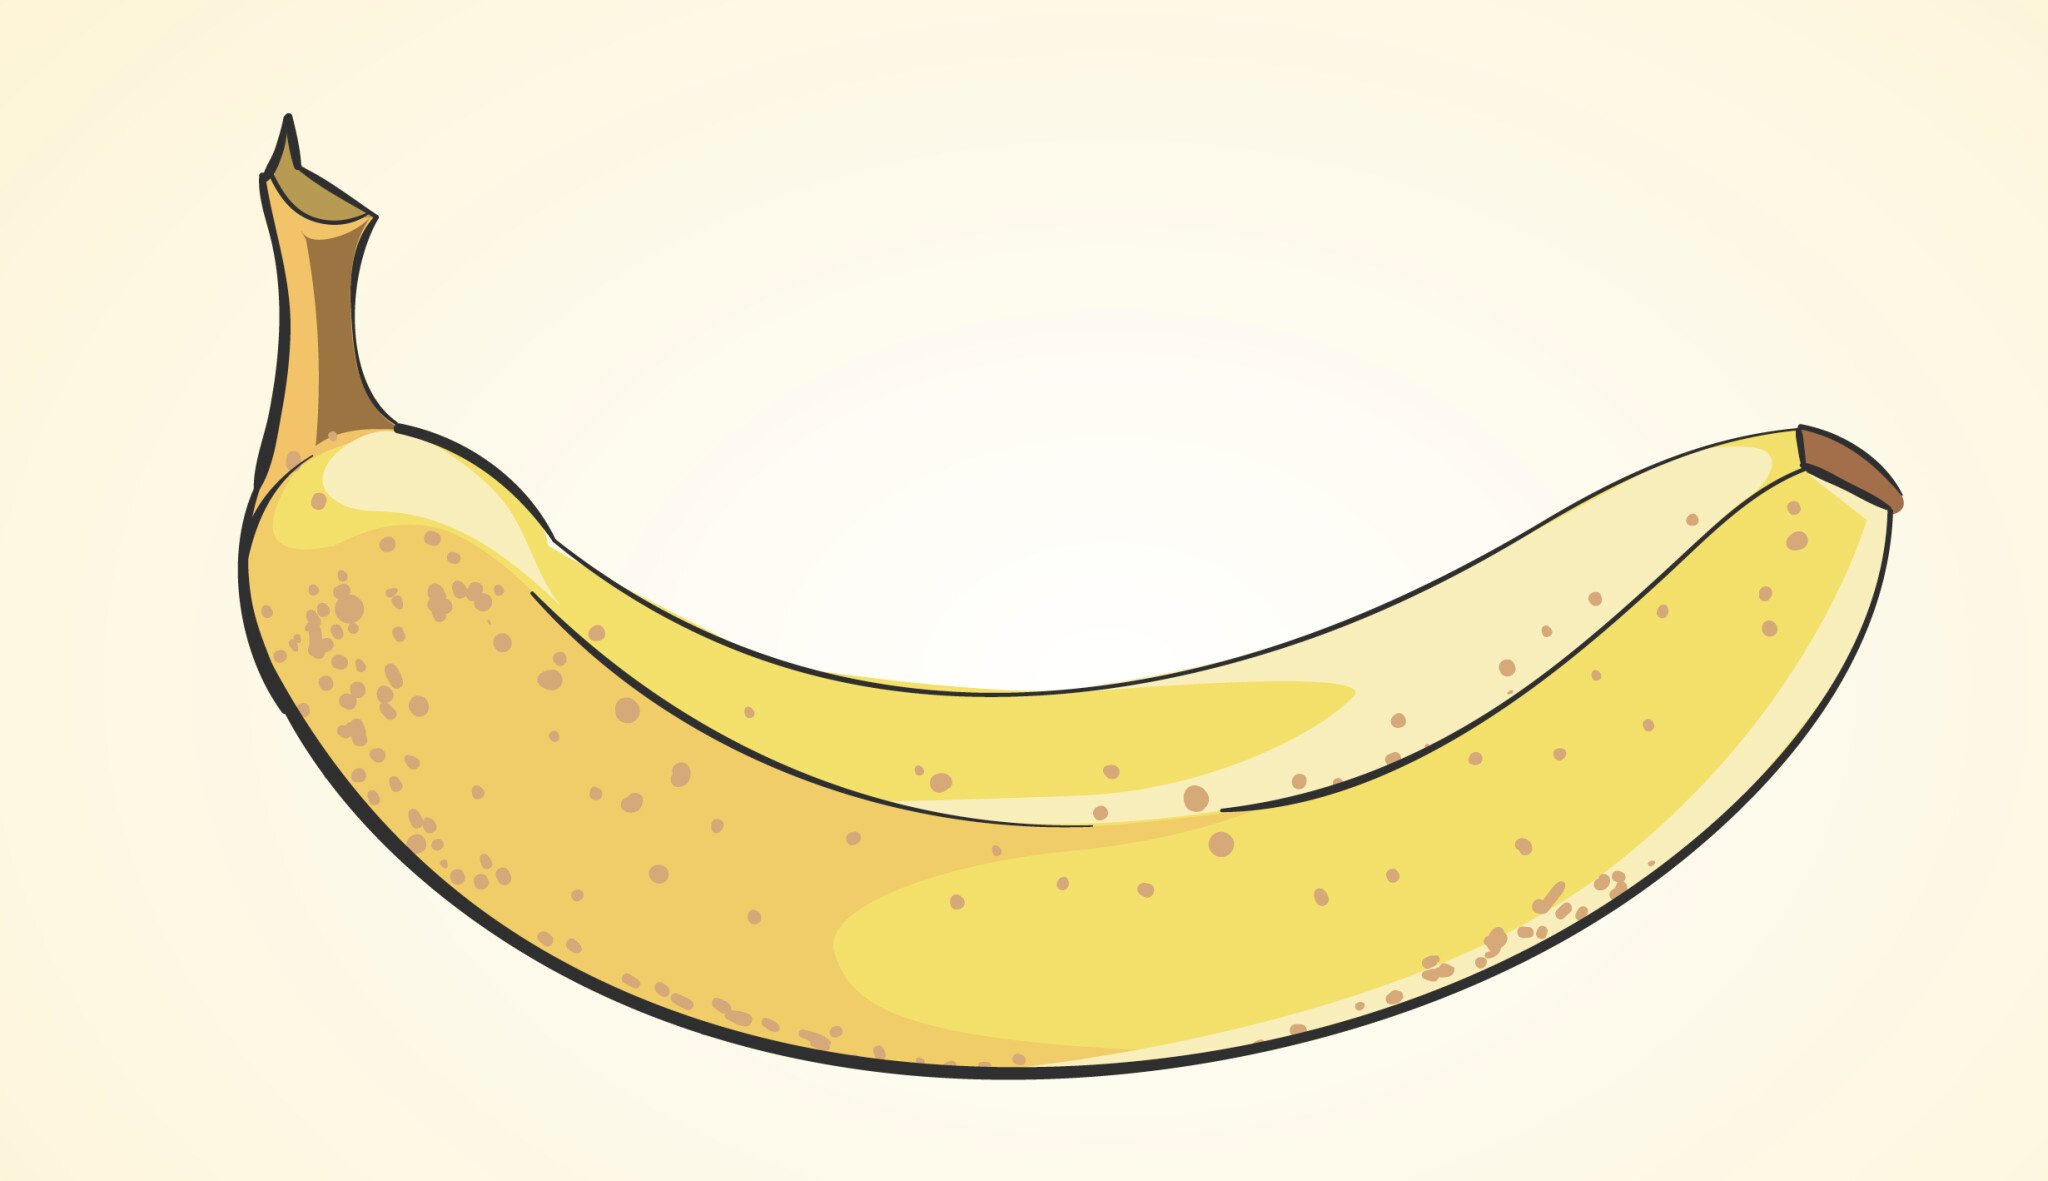 Banánová republika. Česko ročně exportuje banány za miliardu